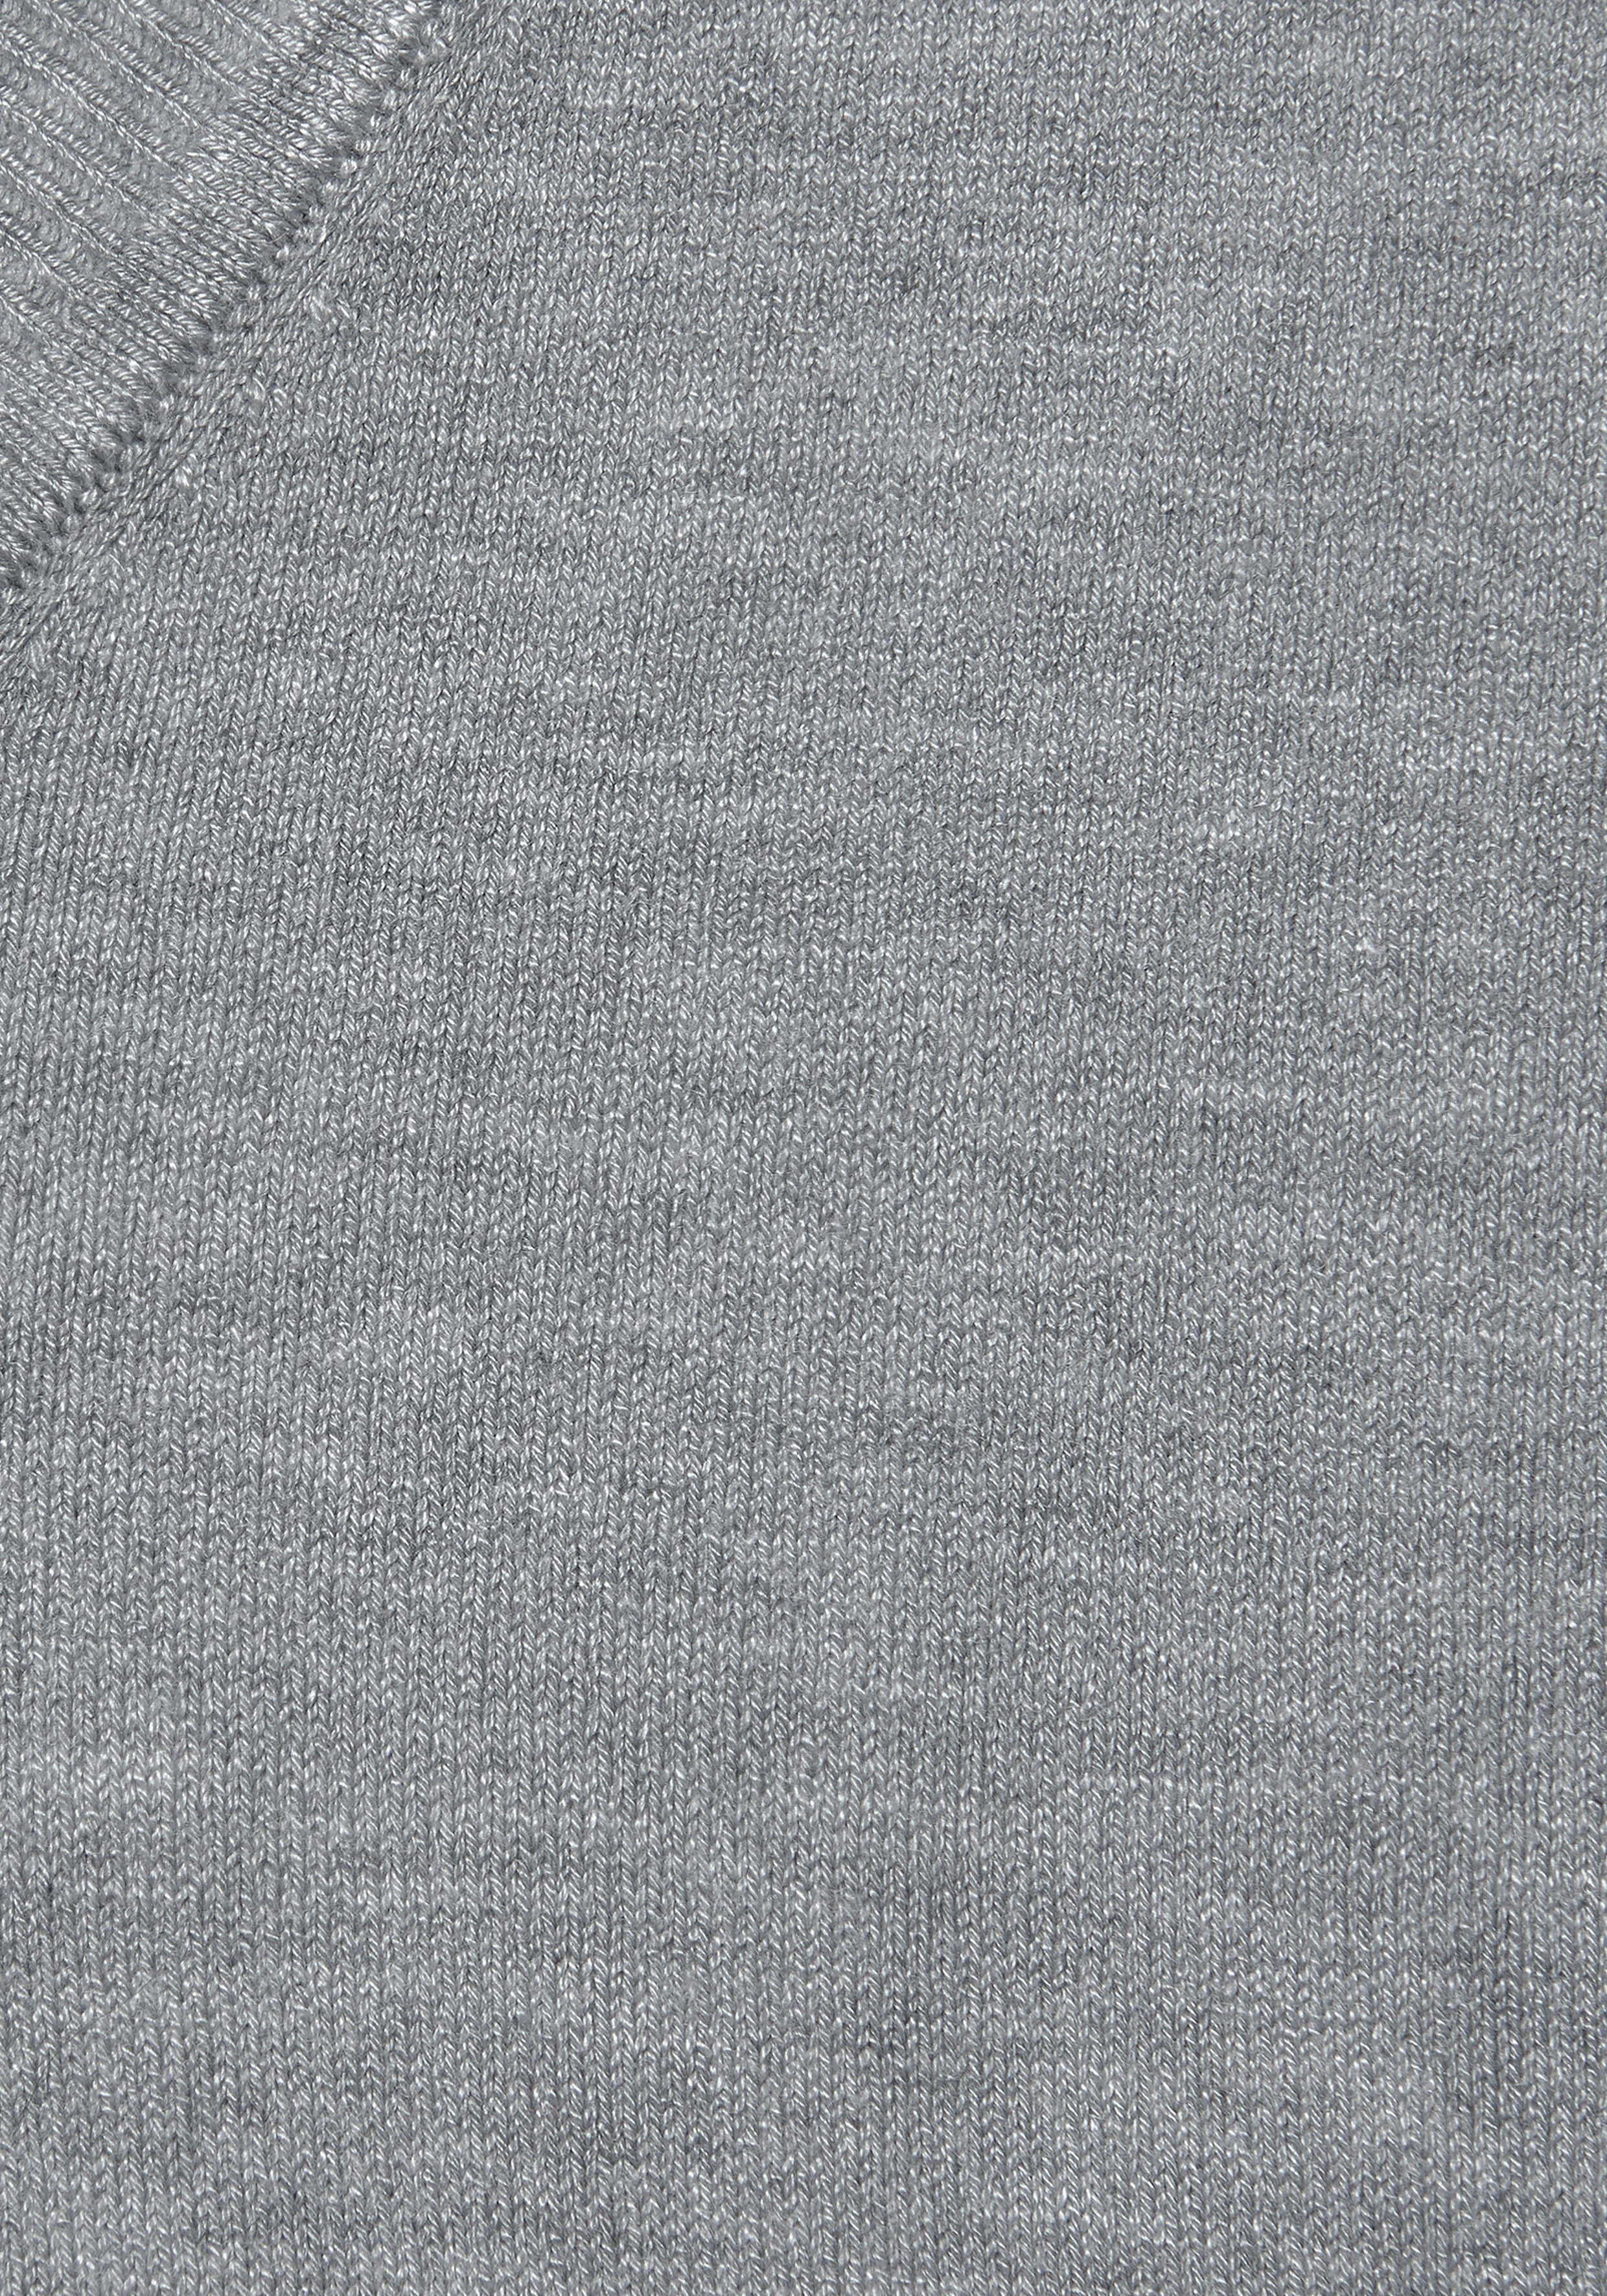 Strickpullover, weicher grau-meliert klassisch in V-Ausschnitt-Pullover Vivance taillierter Form, Basic,